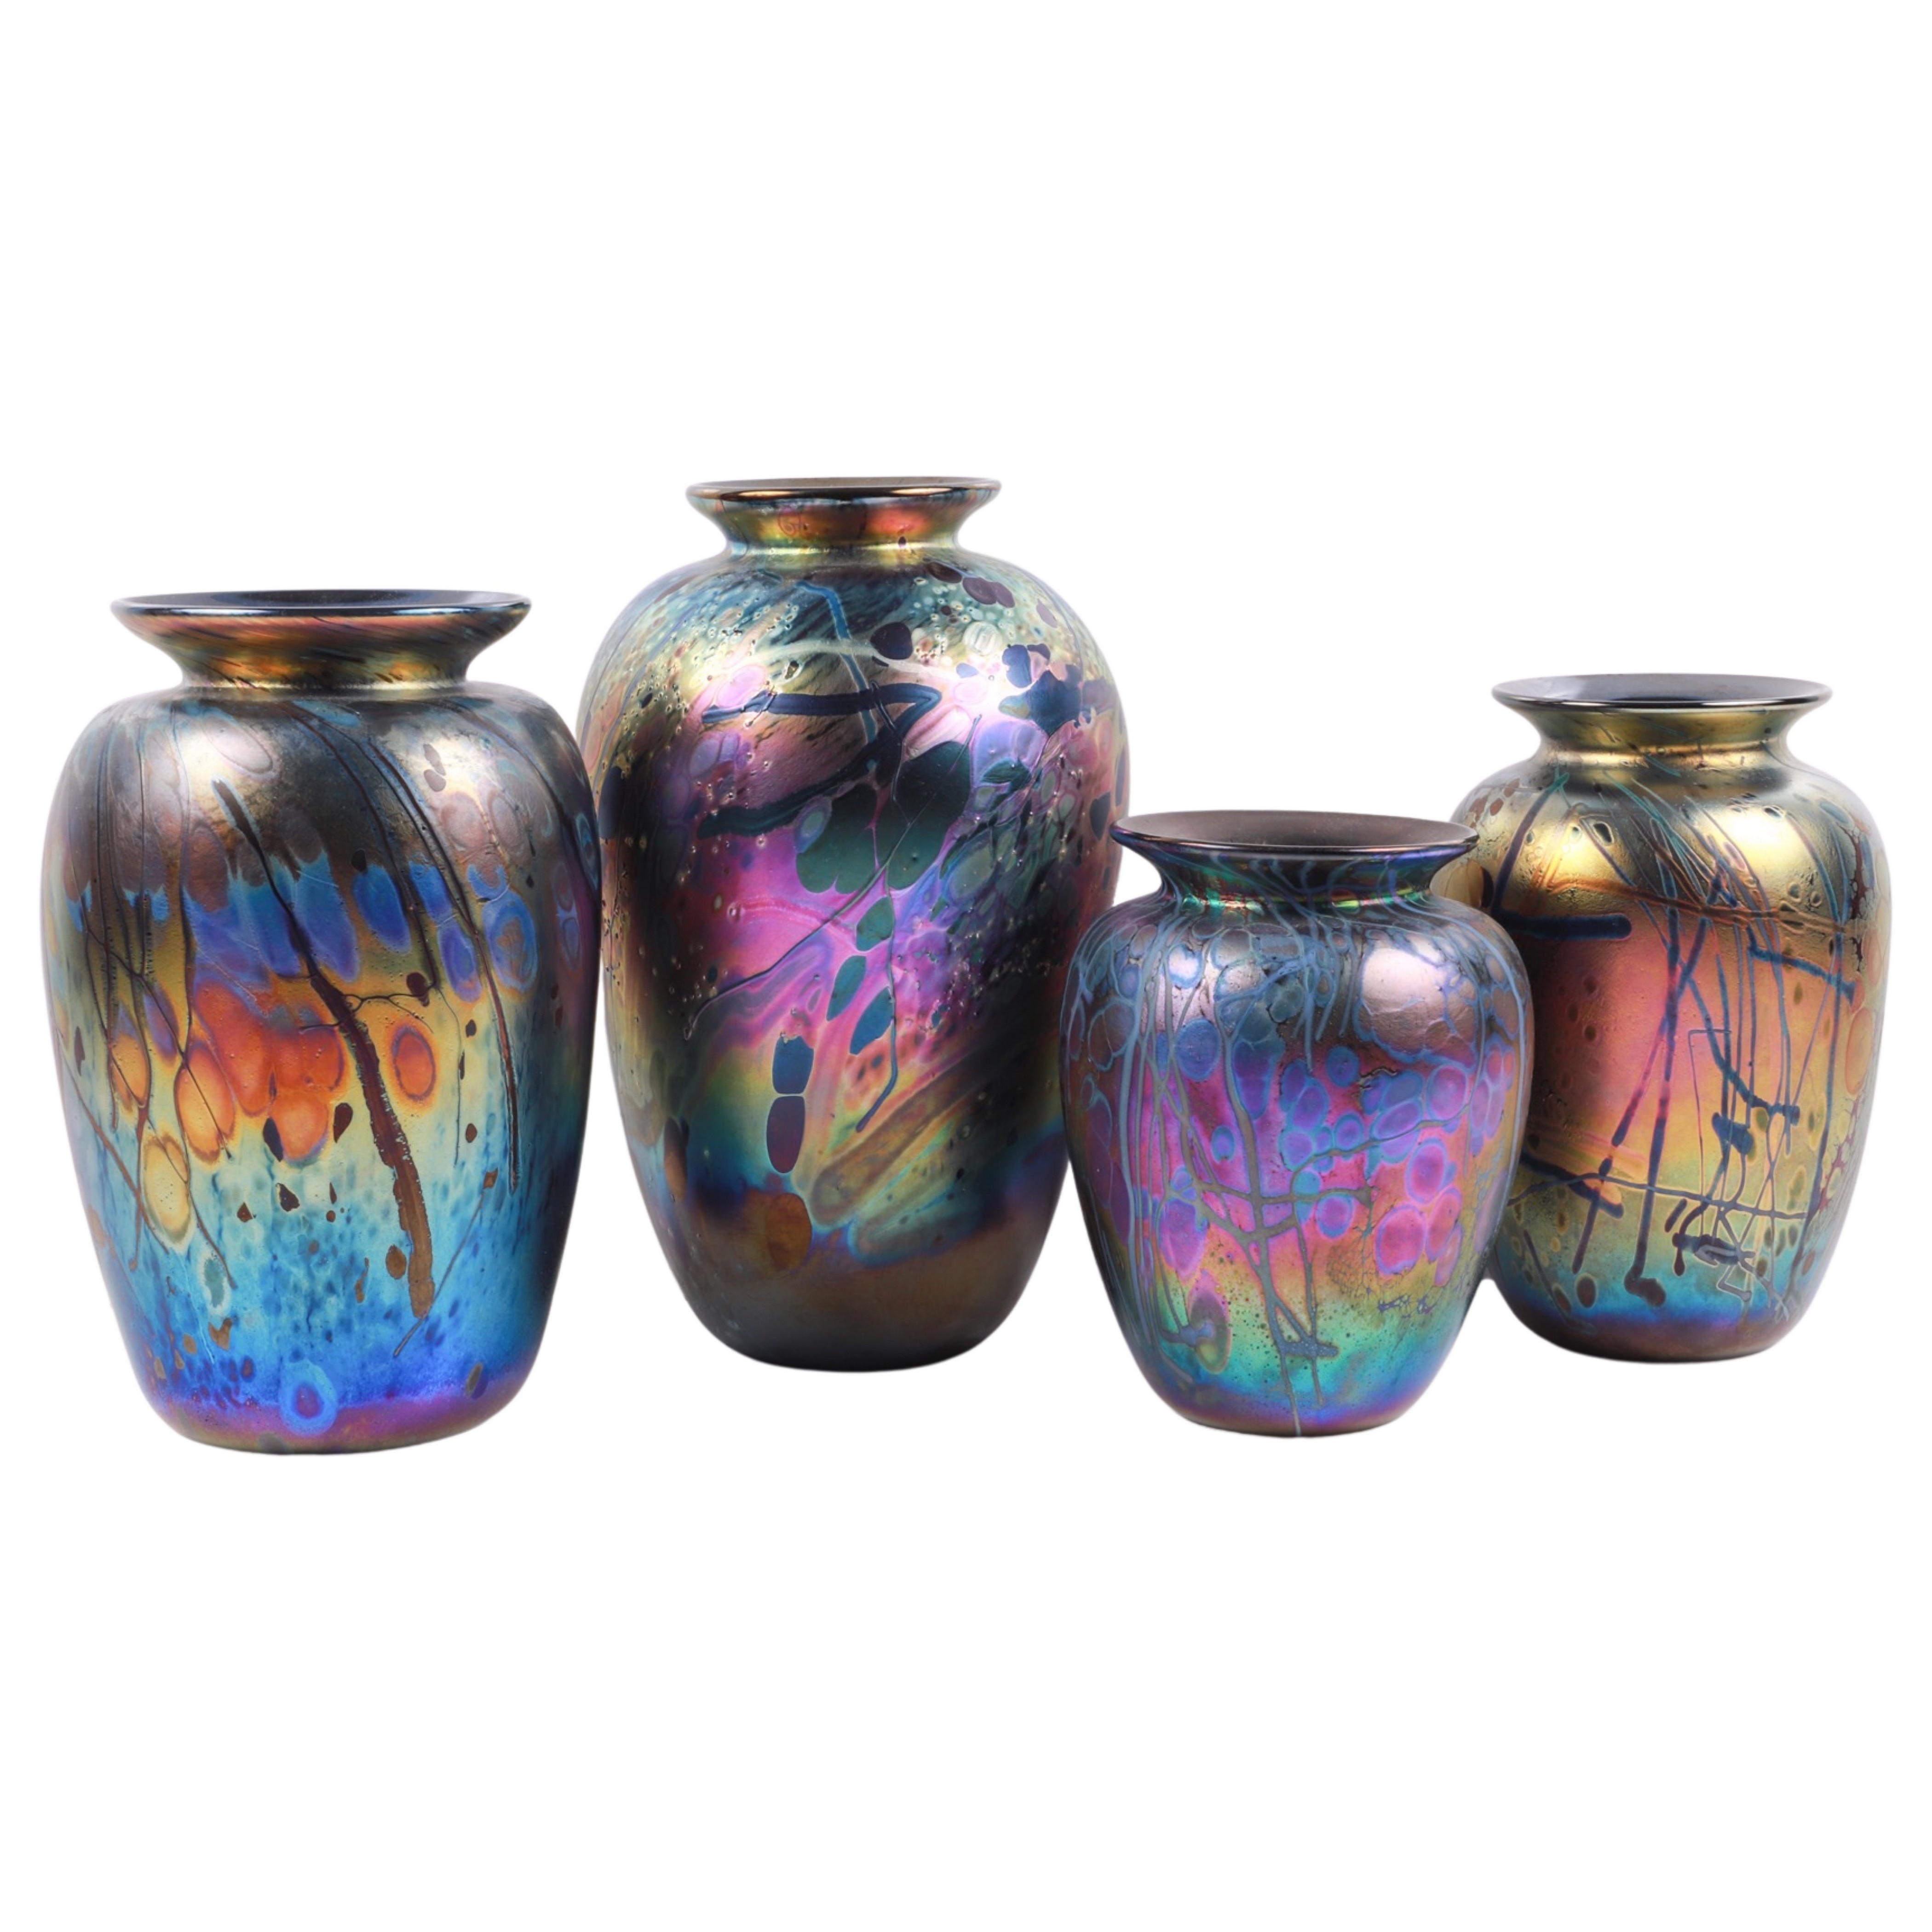 (4) Arthur Allison art glass vases,